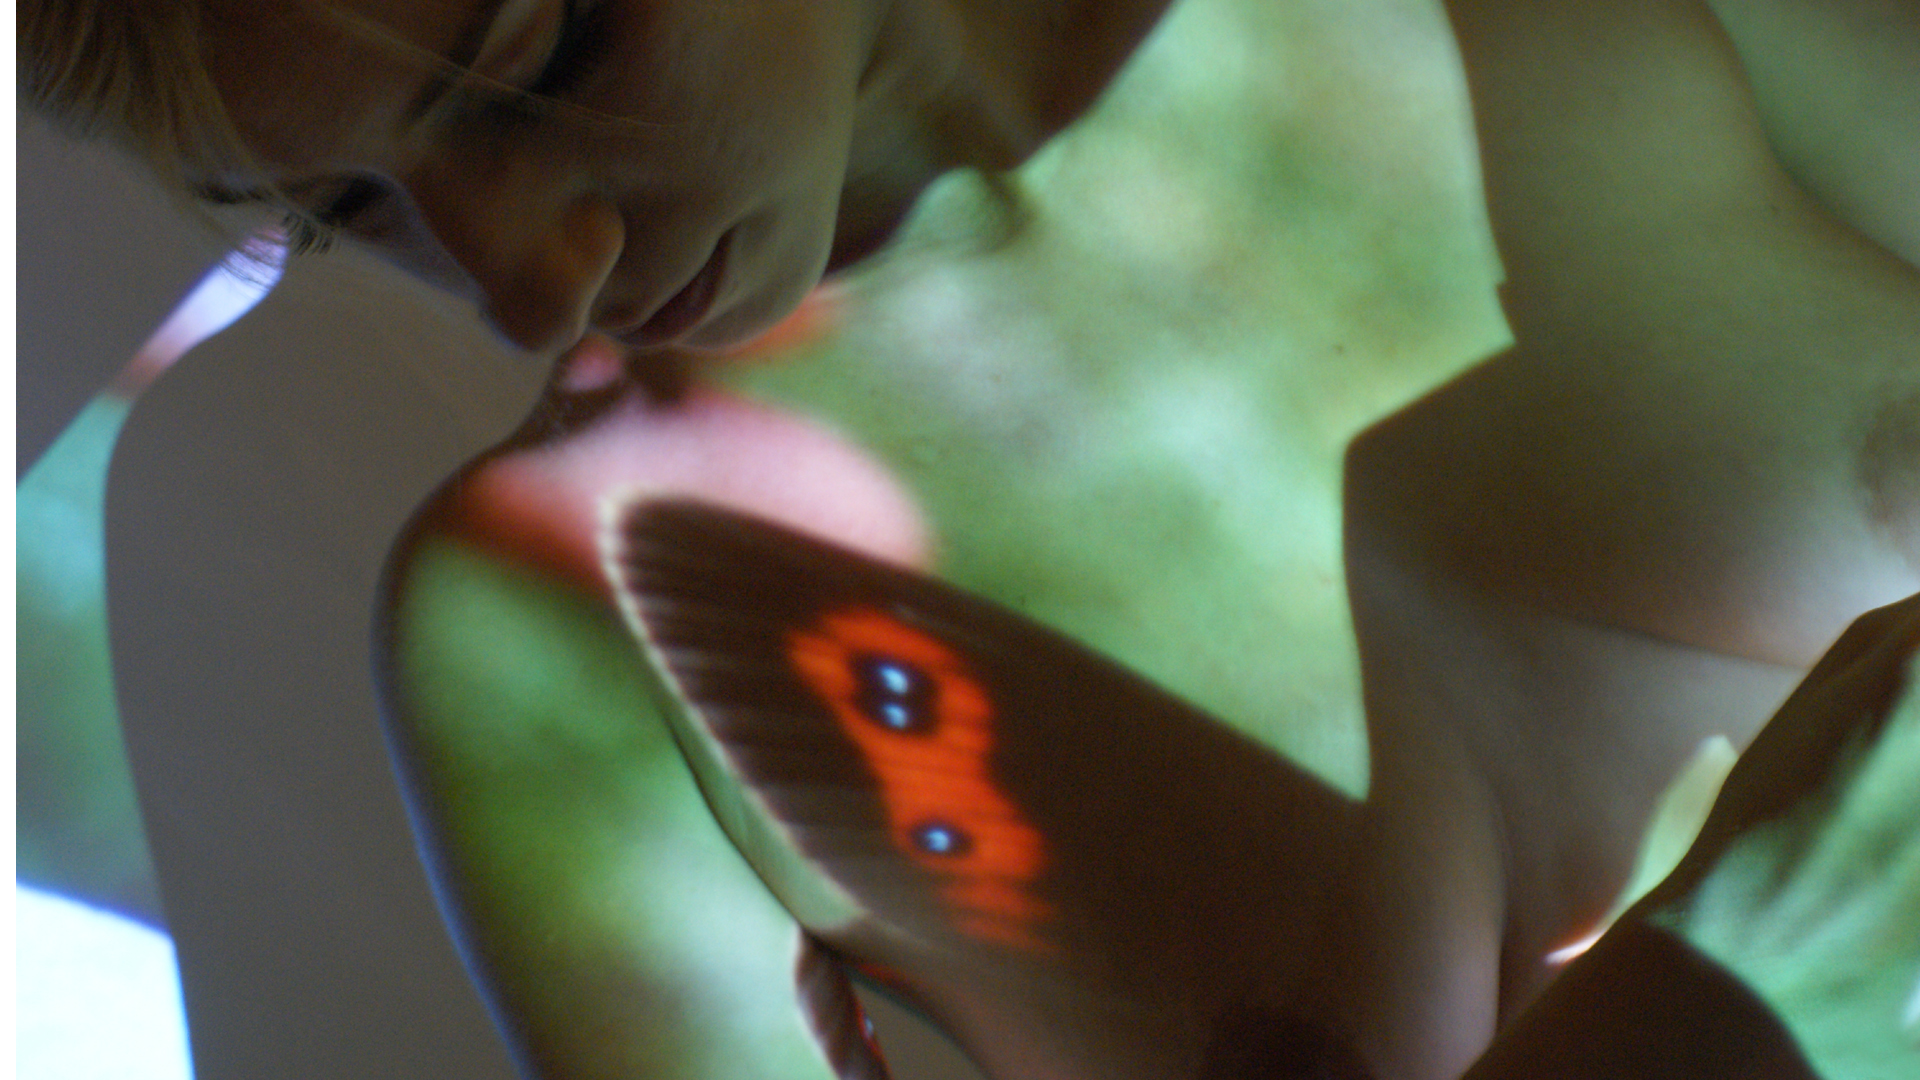 Fotostrecke Akt / Aktfotografie: Schmetterlinge im Bauch